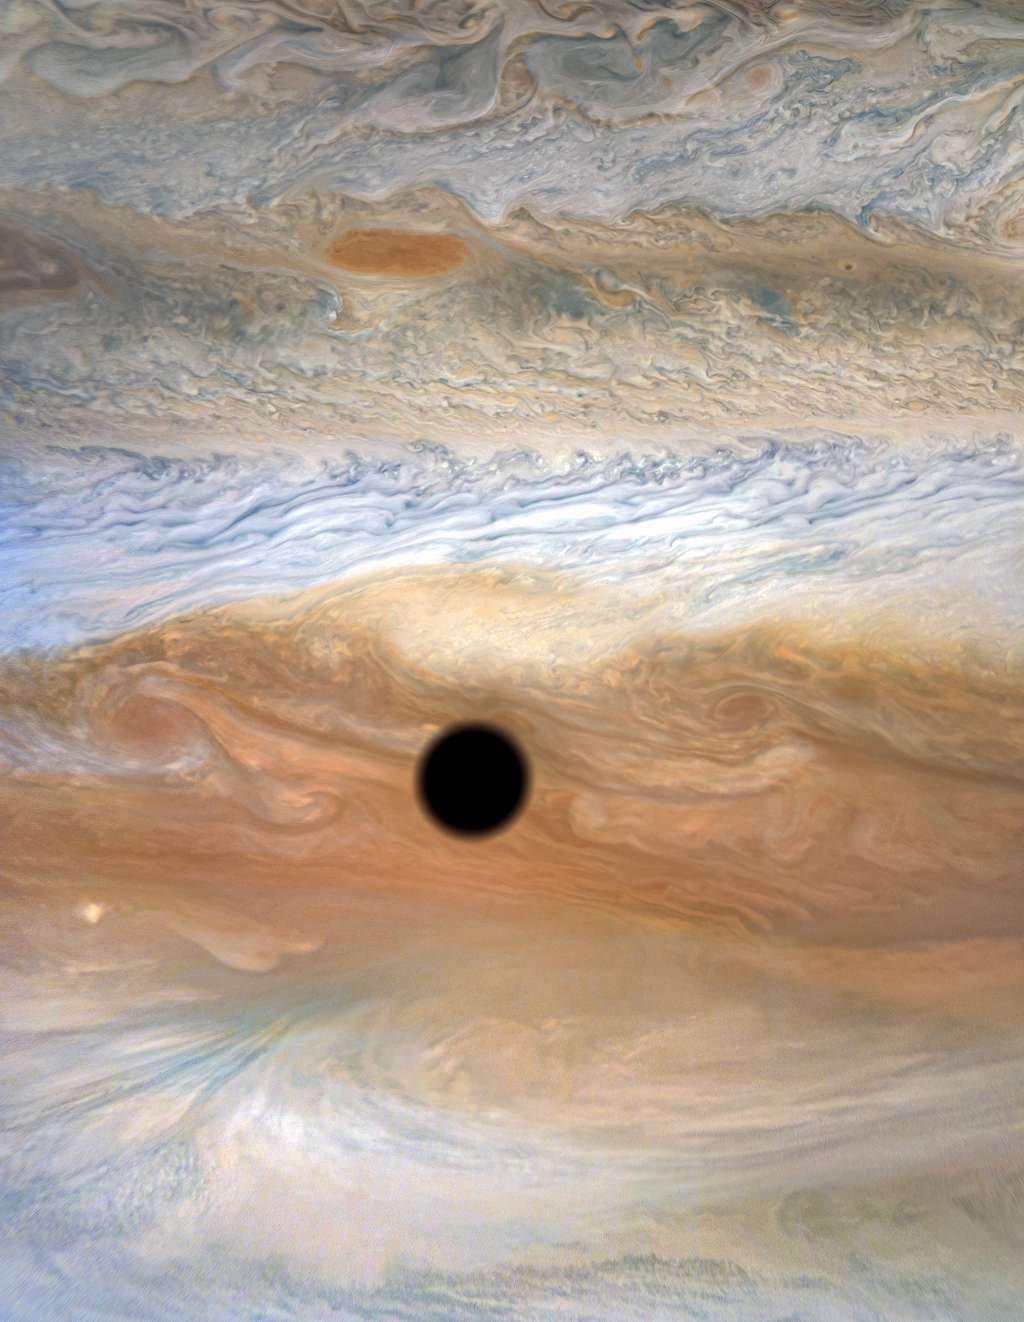 Le spectacle magnifique d'une éclipse de soleil sur Jupiter. © Nasa, JPL-Caltech, SwRI, MSSS, Kevin M. Gill